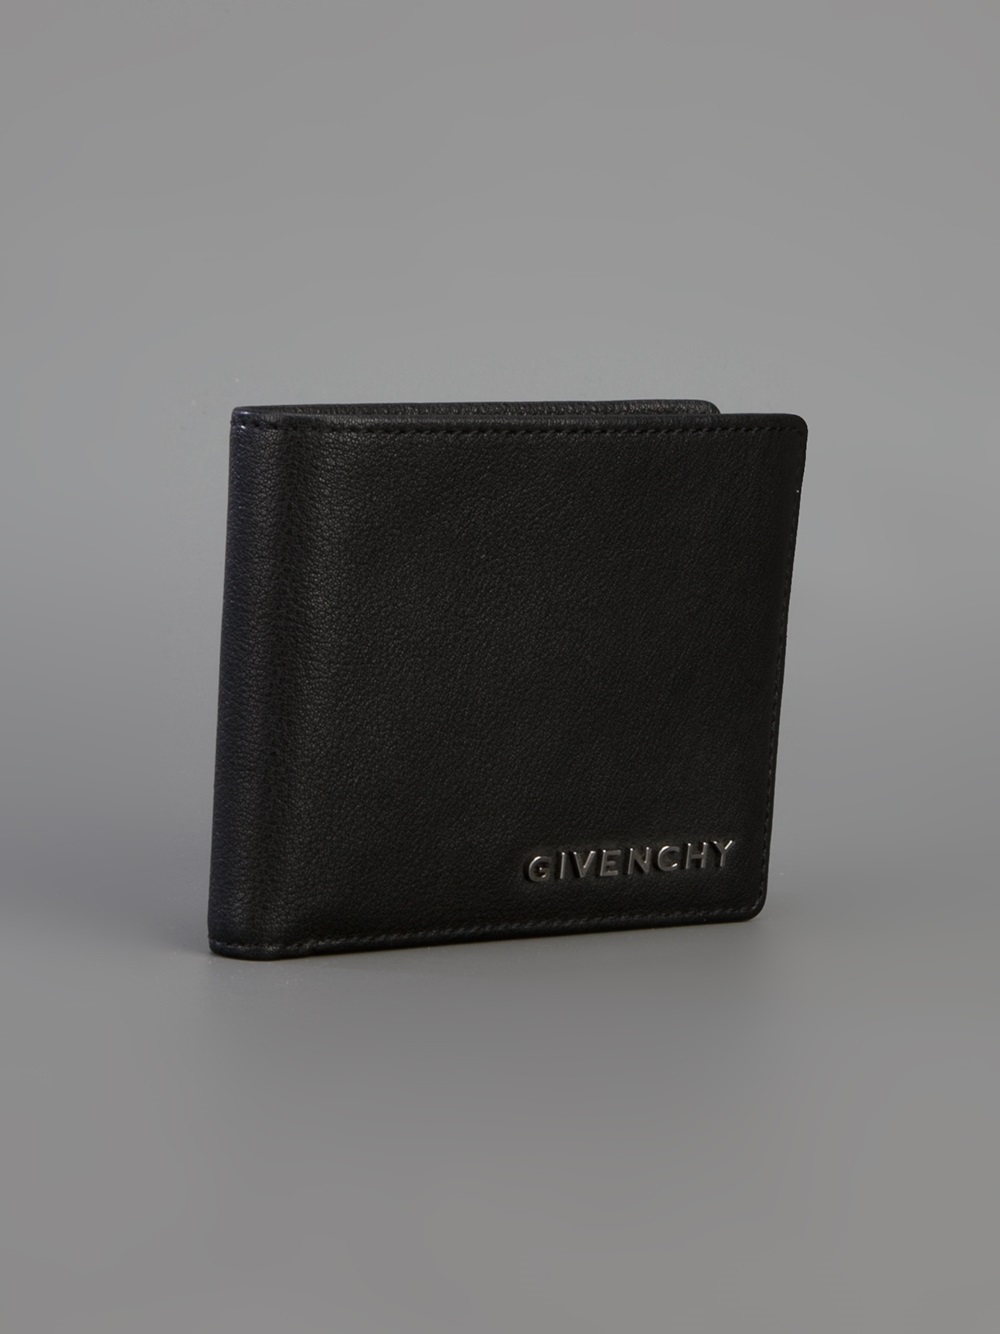 Lyst - Givenchy Logo Wallet in Black for Men